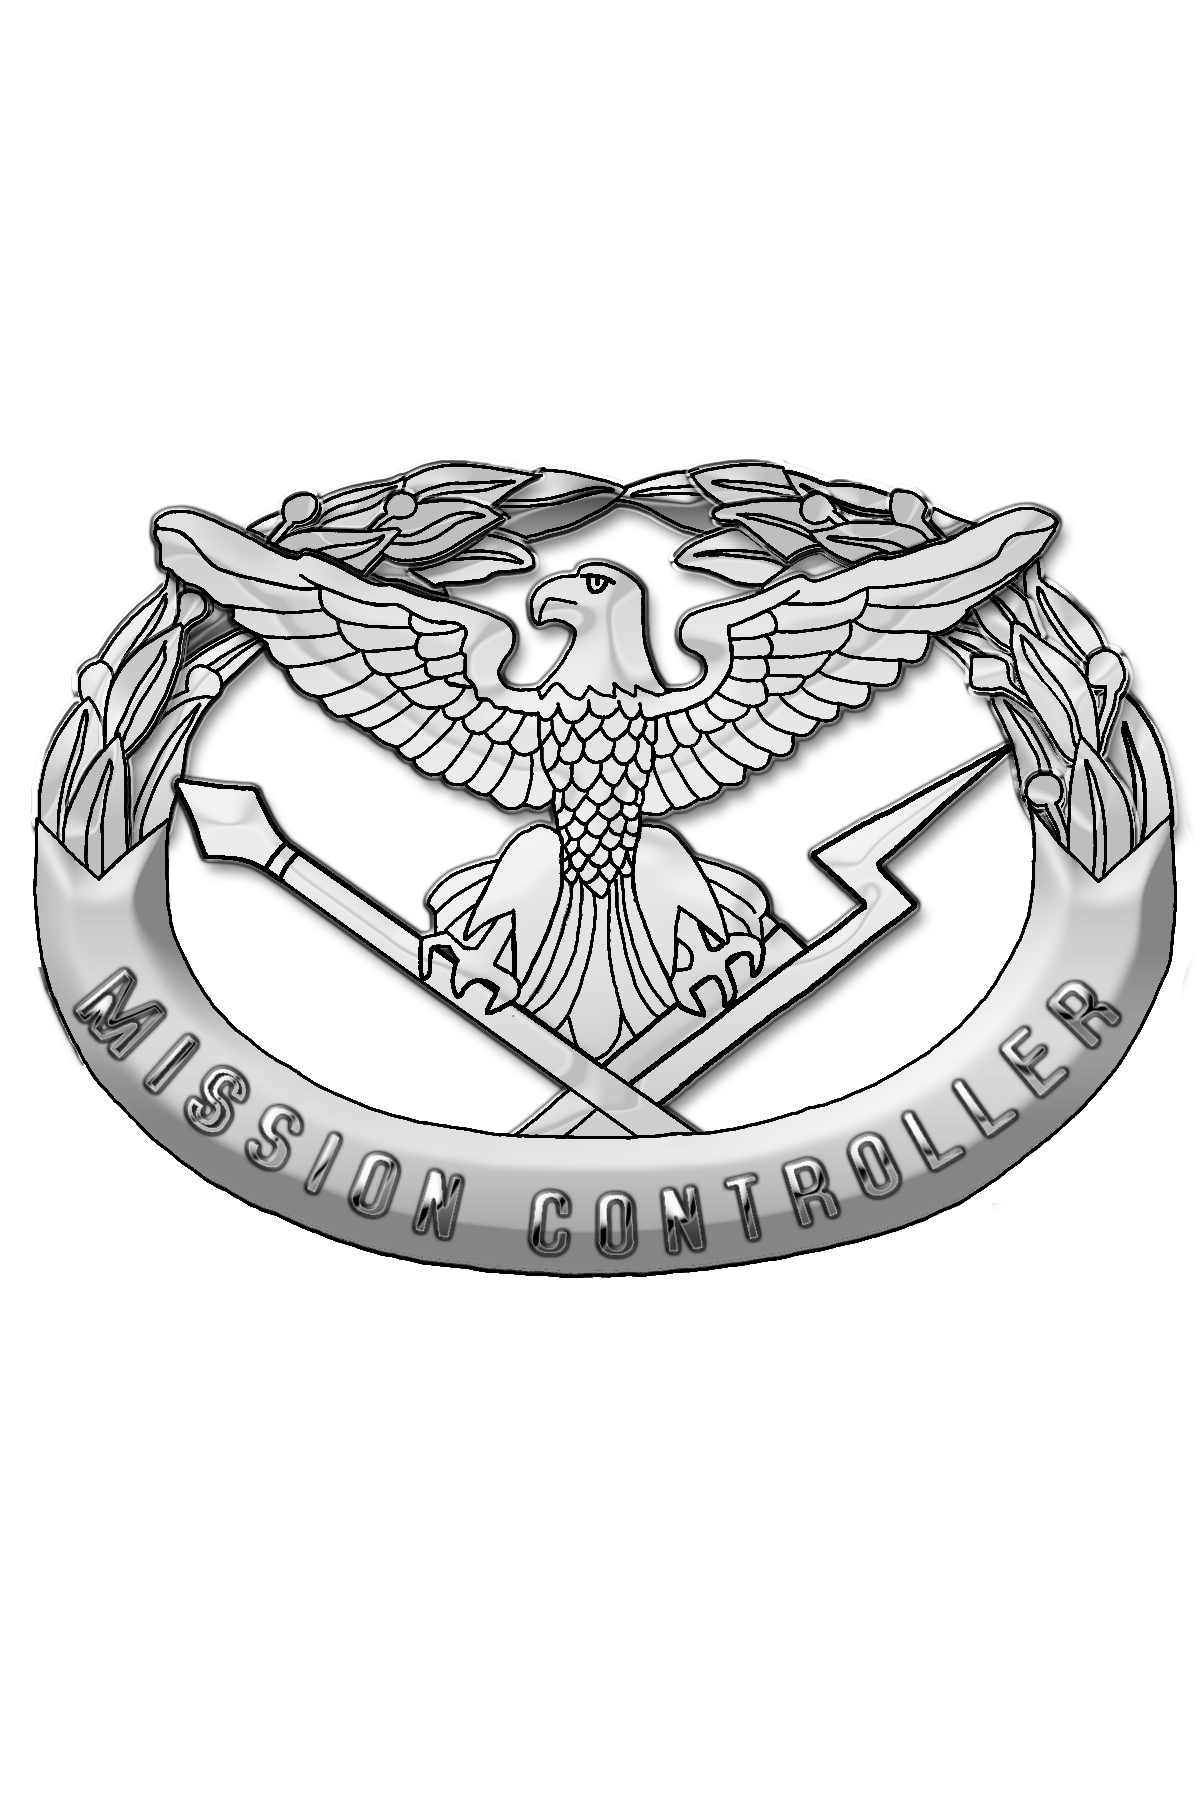 Senior-Mission-Controller-Badge.png